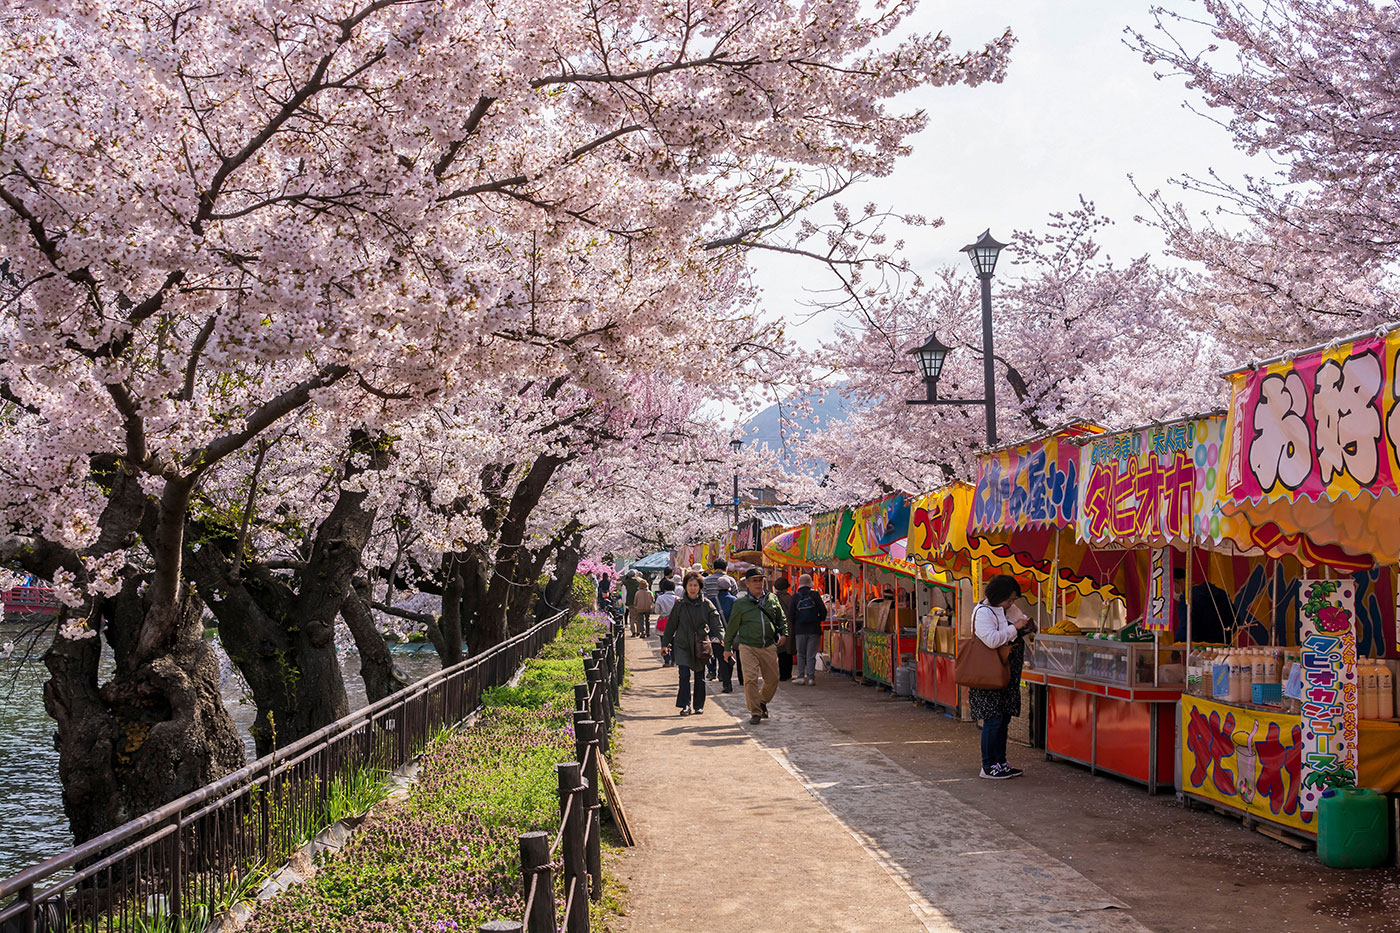 Le parc Garyu de Nagano se transforme en lieu incontournable où admirer la beauté des sakura tout en profitant d’un charmant marché installé le long du fleuve